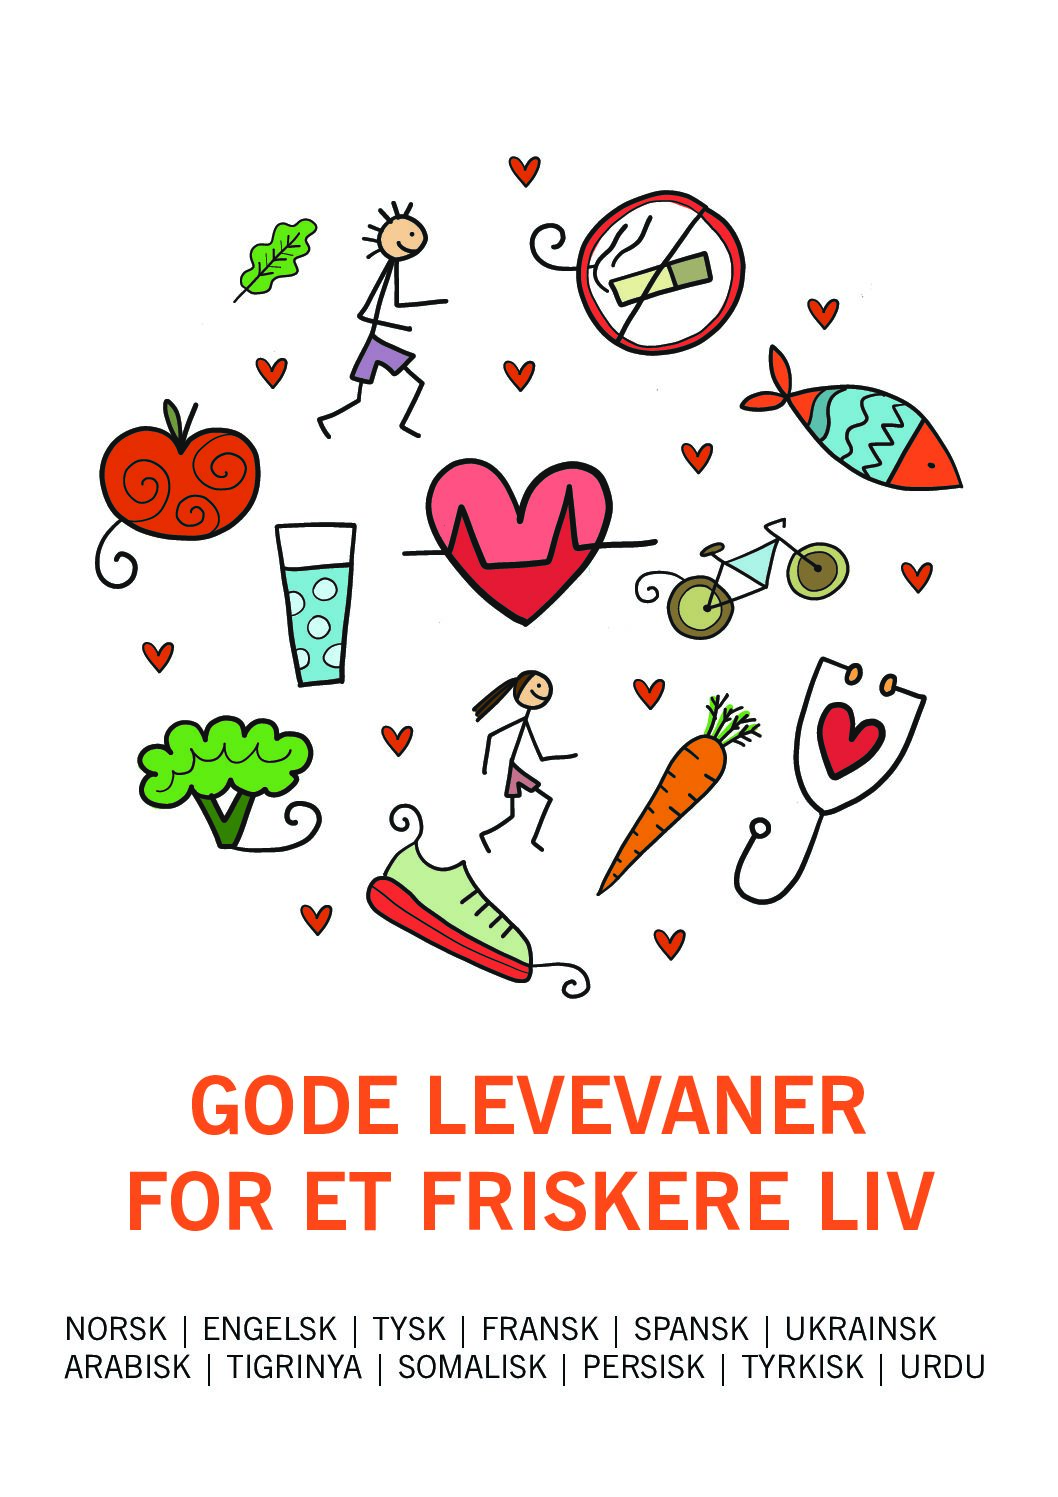 Gode levevaner for et friskere liv - plakat/brosjyre på flere språk